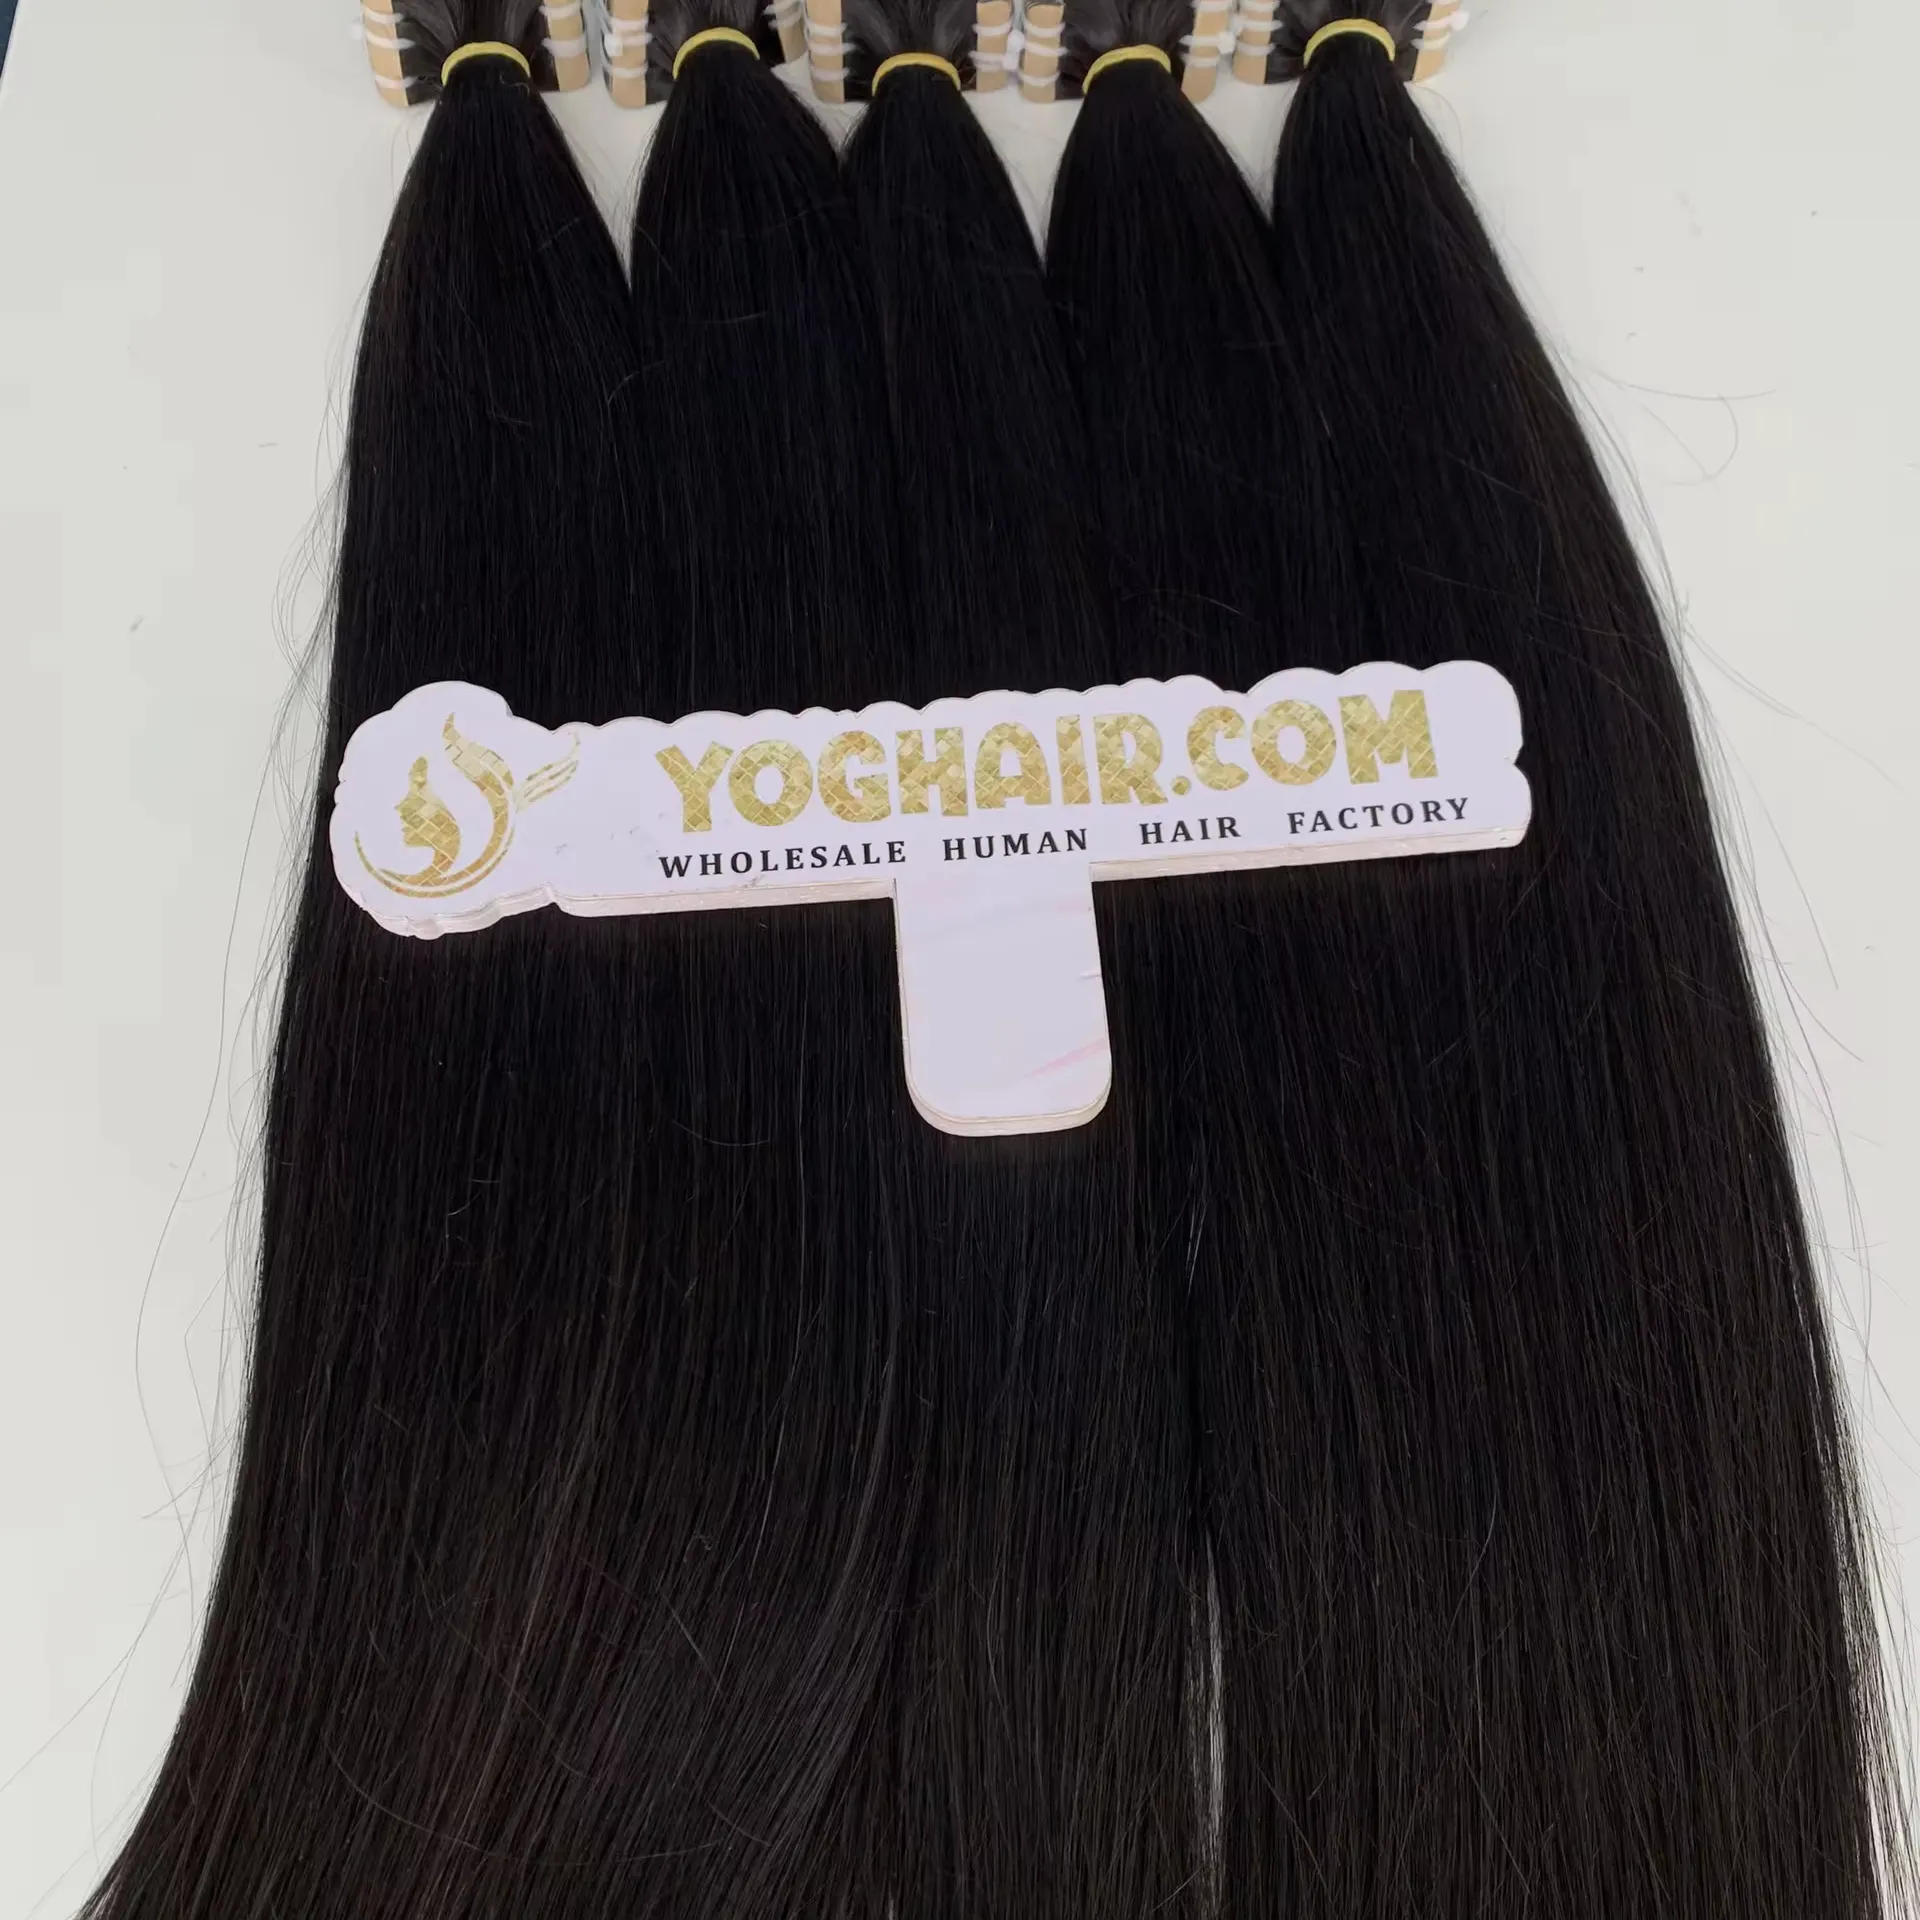 للبيع من الشركة المصنعة لصناعة الشعر المستعار وصلات شعر بشري فيتنامي 100% أفضل خيار لكل الطول بسعر منخفض ولون أسود وسريع التوصيل هدية مجانية